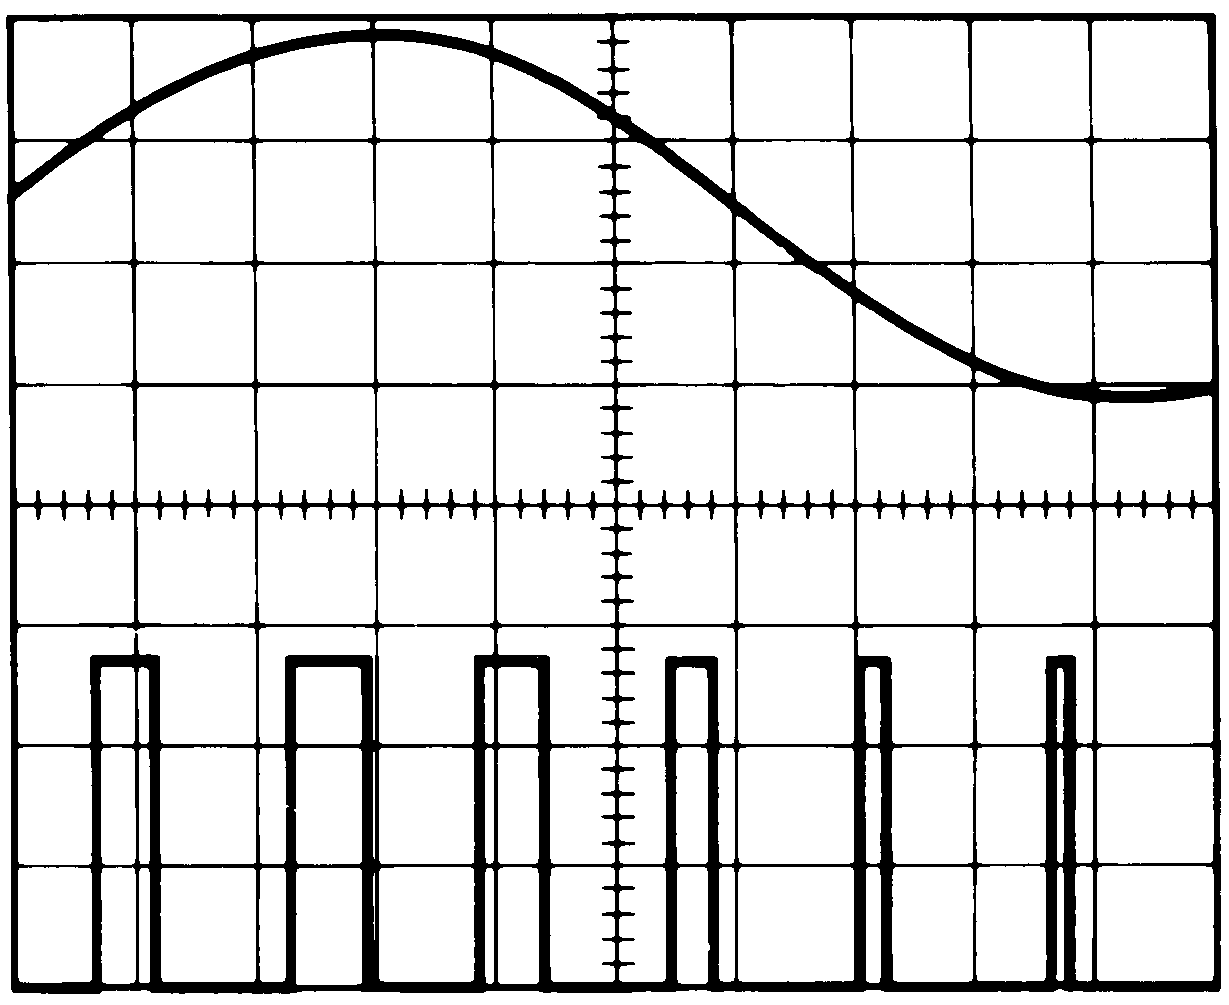 TLC555-Q1 パルス幅変調波形：
                            上の波形—変調 下の波形—出力電圧